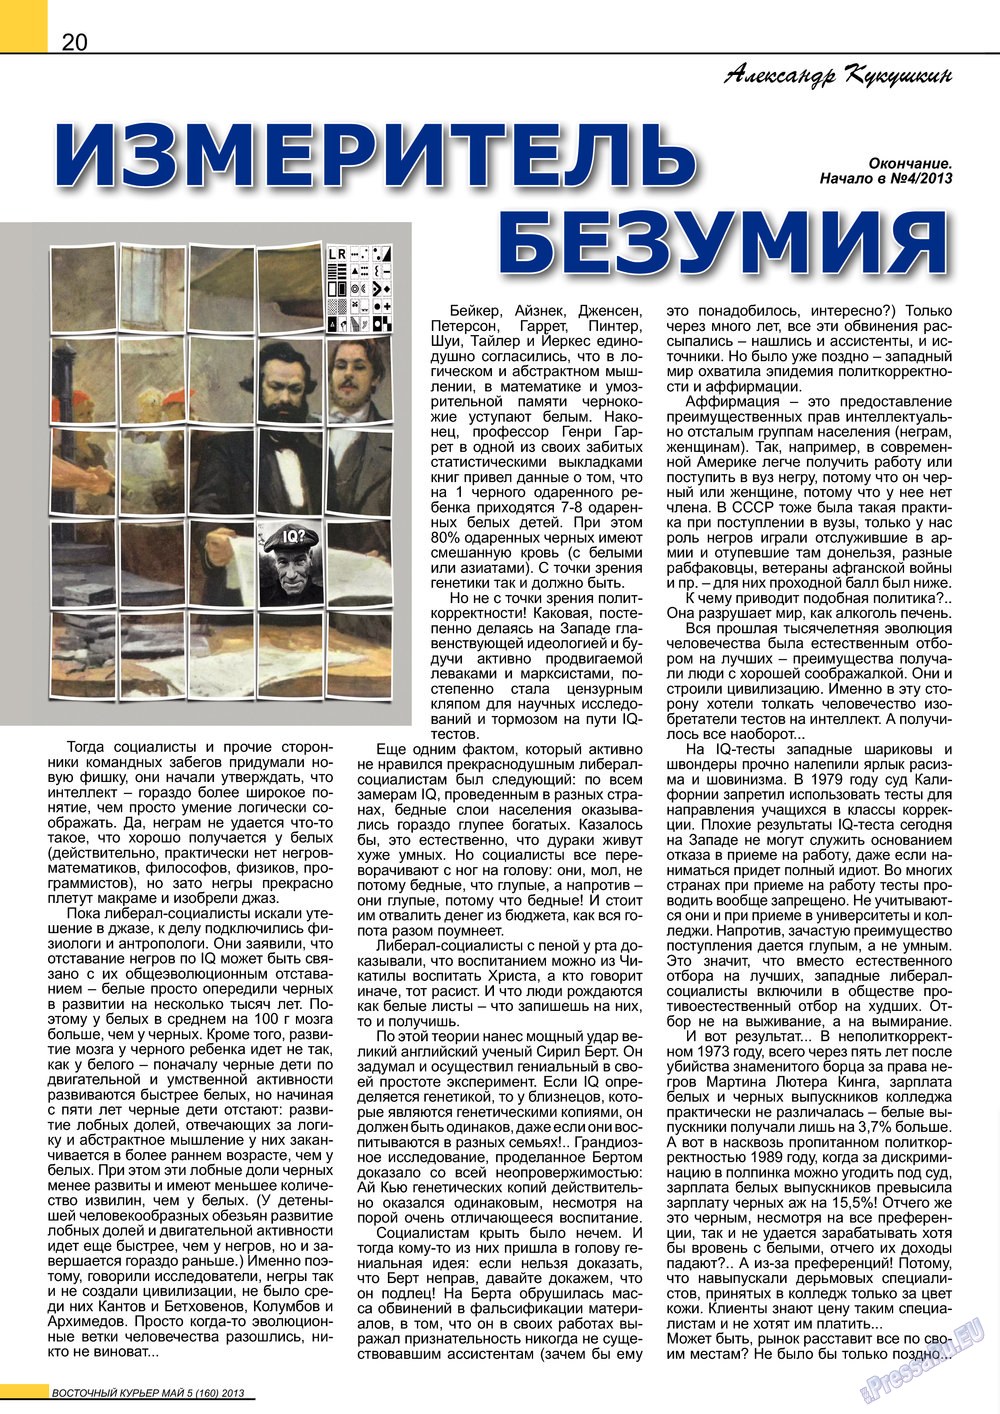 Восточный курьер (журнал). 2013 год, номер 5, стр. 20